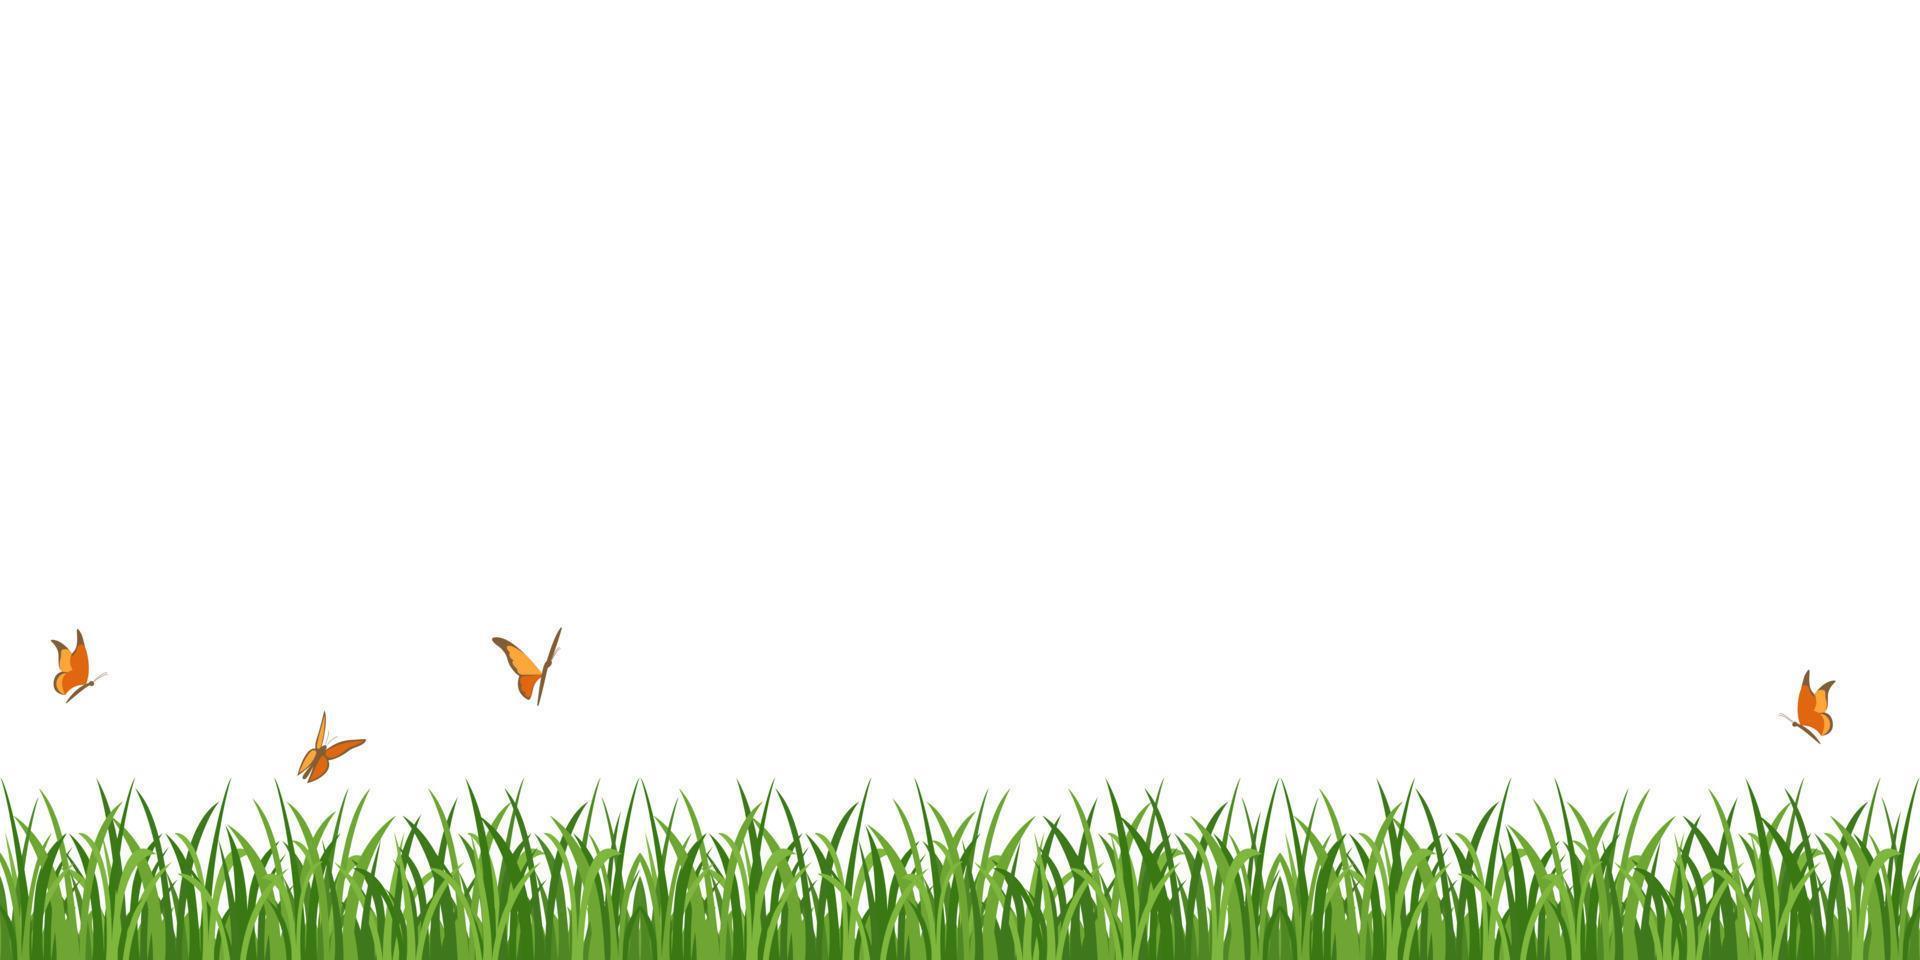 grüne Grasgrenze mit Schmetterlingen. vektorillustration des nahtlosen rasens lokalisiert auf weiß. vektor